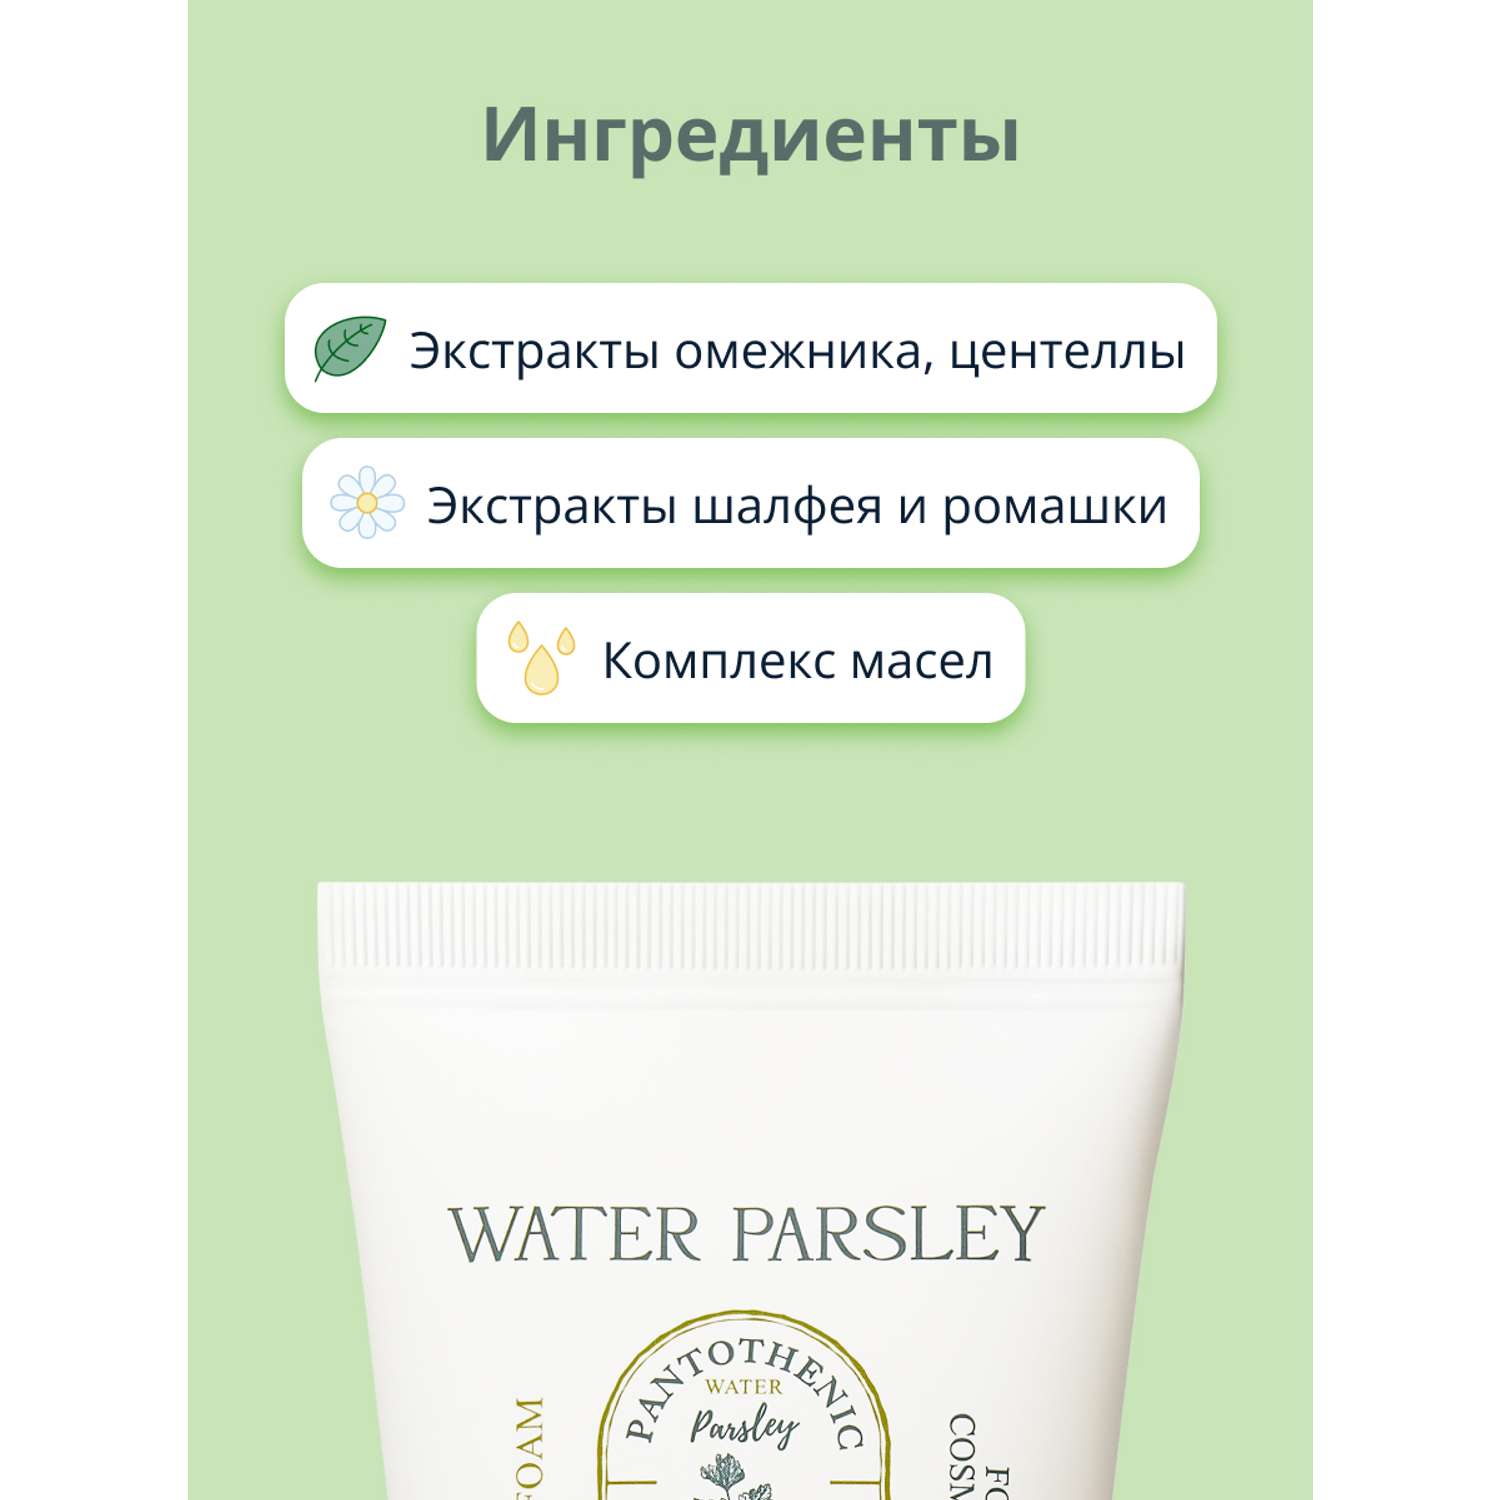 Пенка для умывания Skinfood Water parsley с экстрактом омежника против несовершенств кожи 150 мл - фото 3